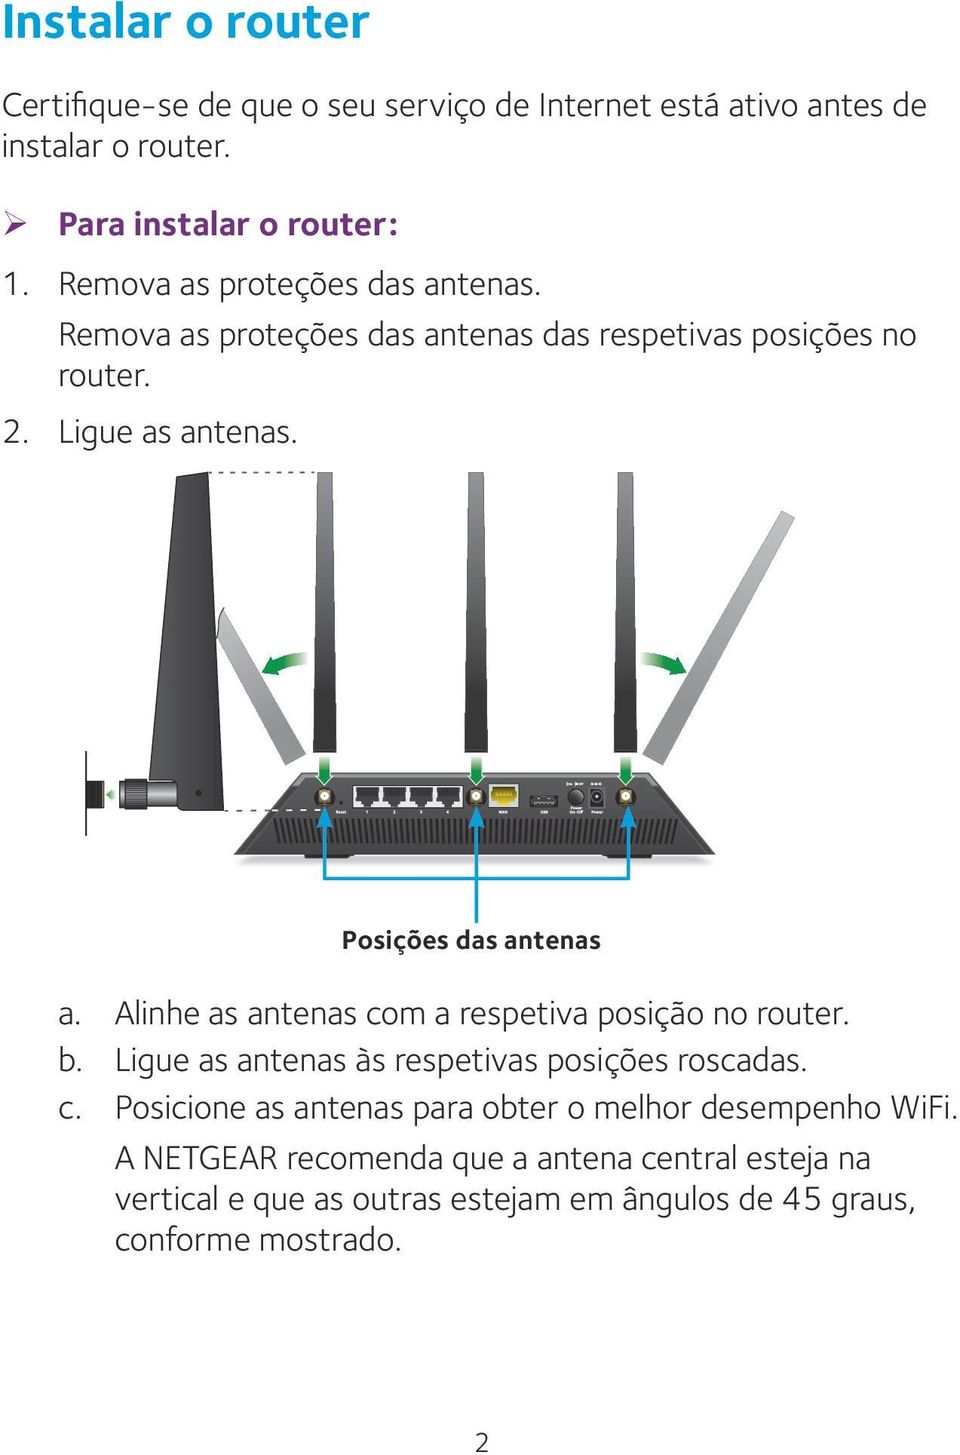 Alinhe as antenas com a respetiva posição no router. b. Ligue as antenas às respetivas posições roscadas. c. Posicione as antenas para obter o melhor desempenho WiFi.